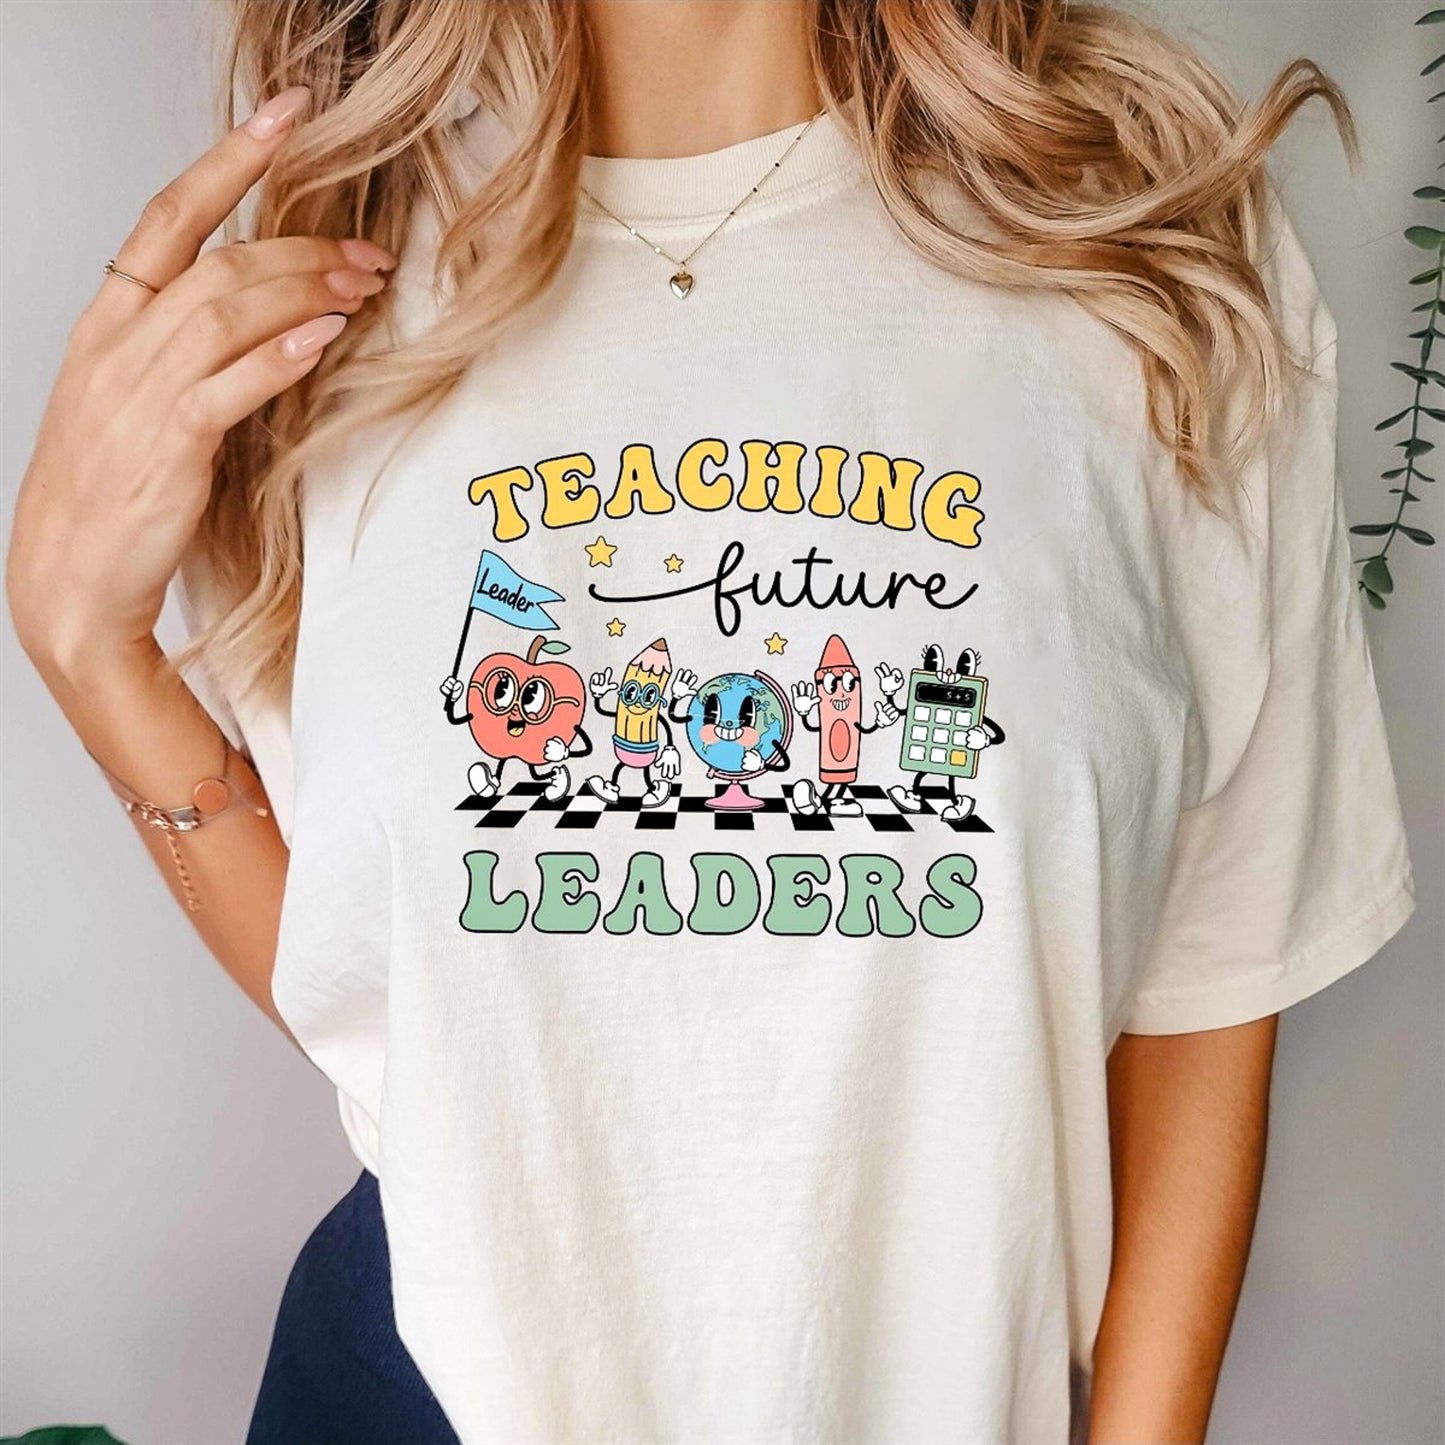 Teaching Future Leaders Cartoon School Things T-Shirt or Crew Sweatshirt